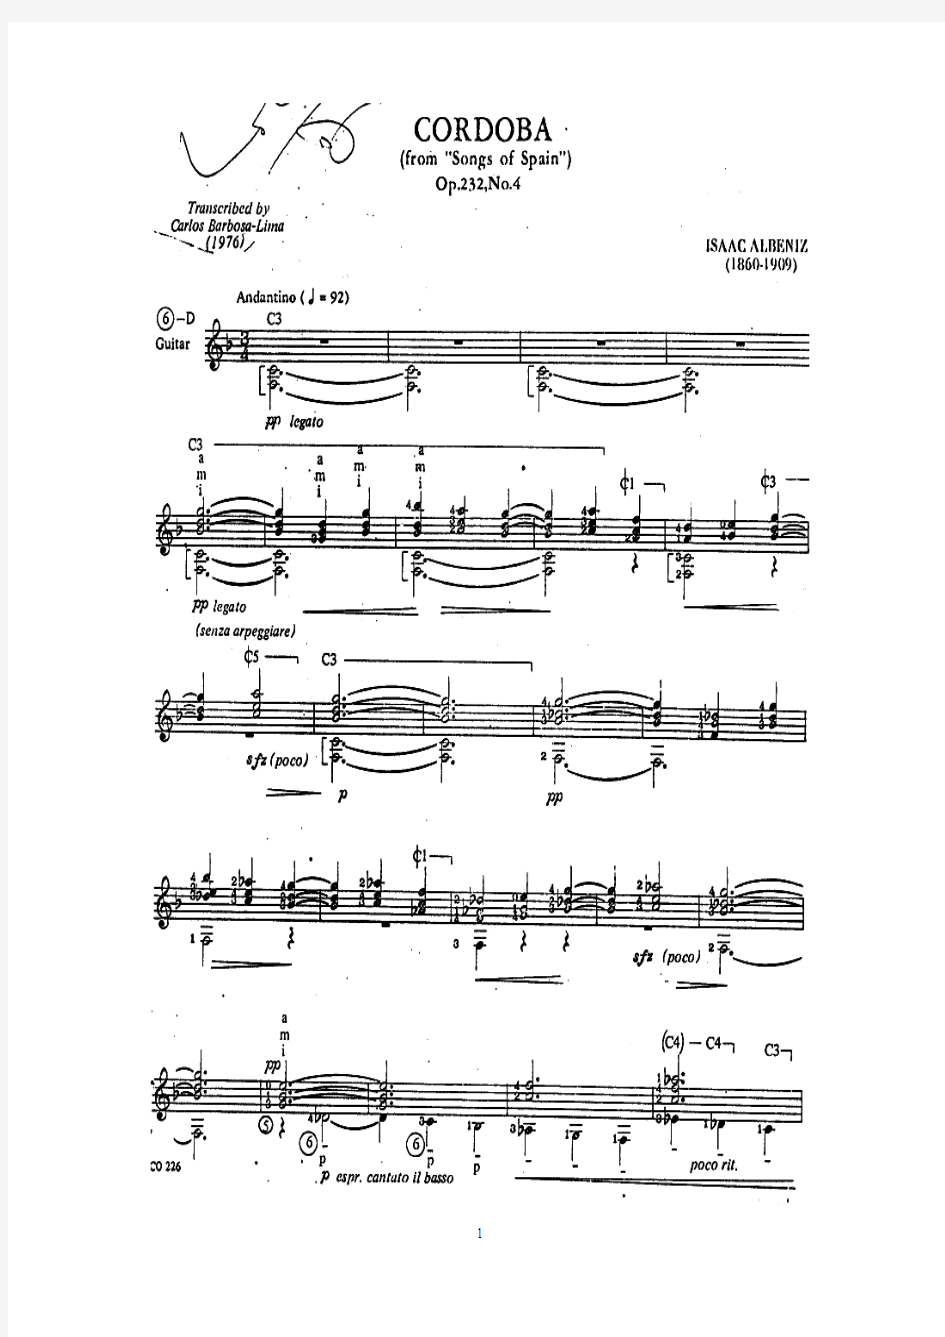 科尔多瓦 Cordoba,op.232-04;阿尔贝尼斯 Isaac Albeniz(Barbosa-Lima古典吉他谱)